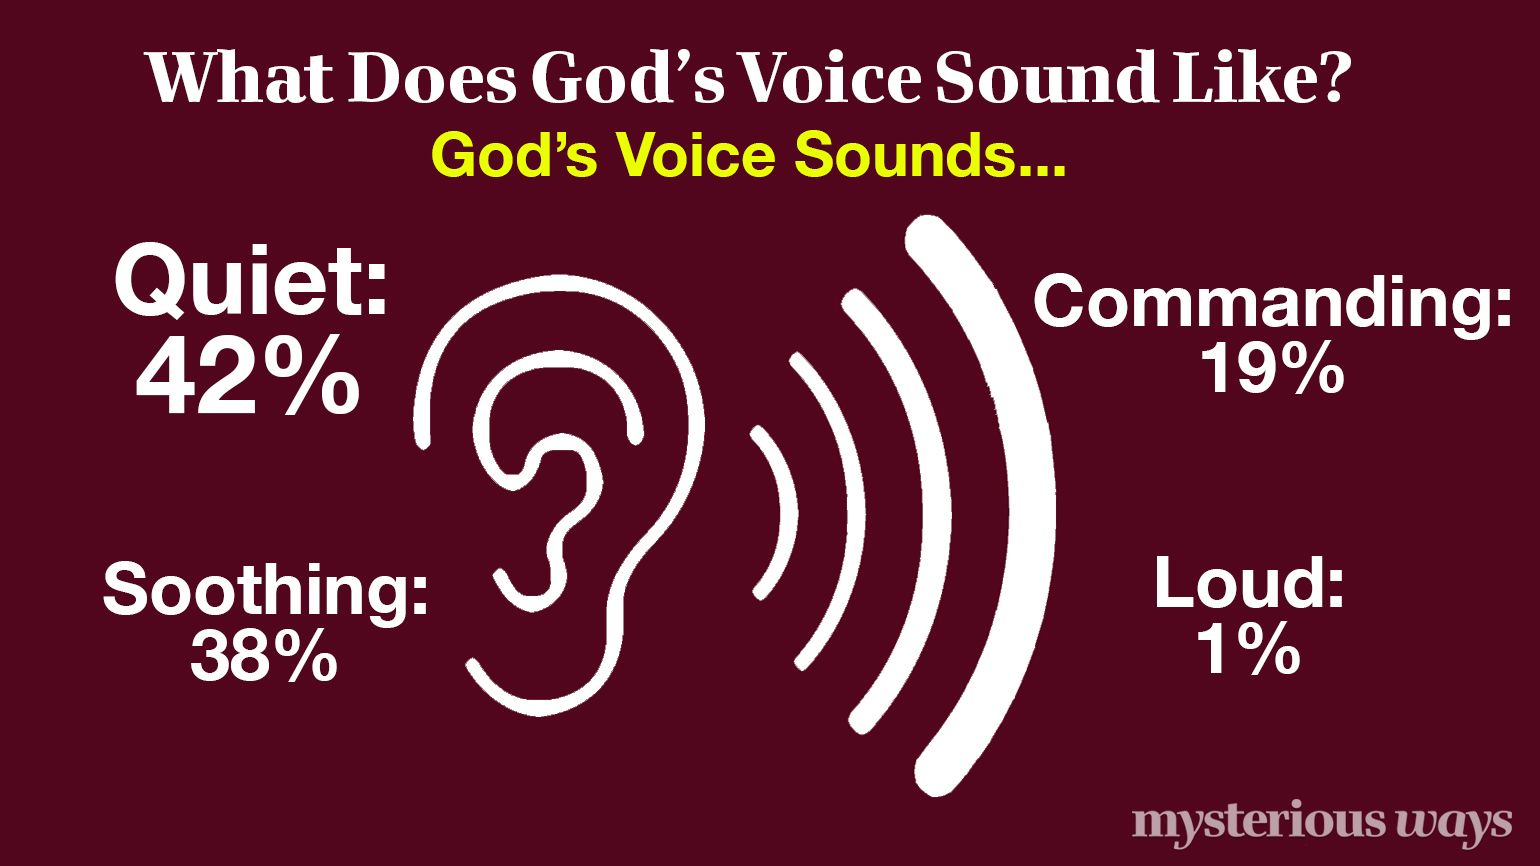 God's Voice Sounds Like...